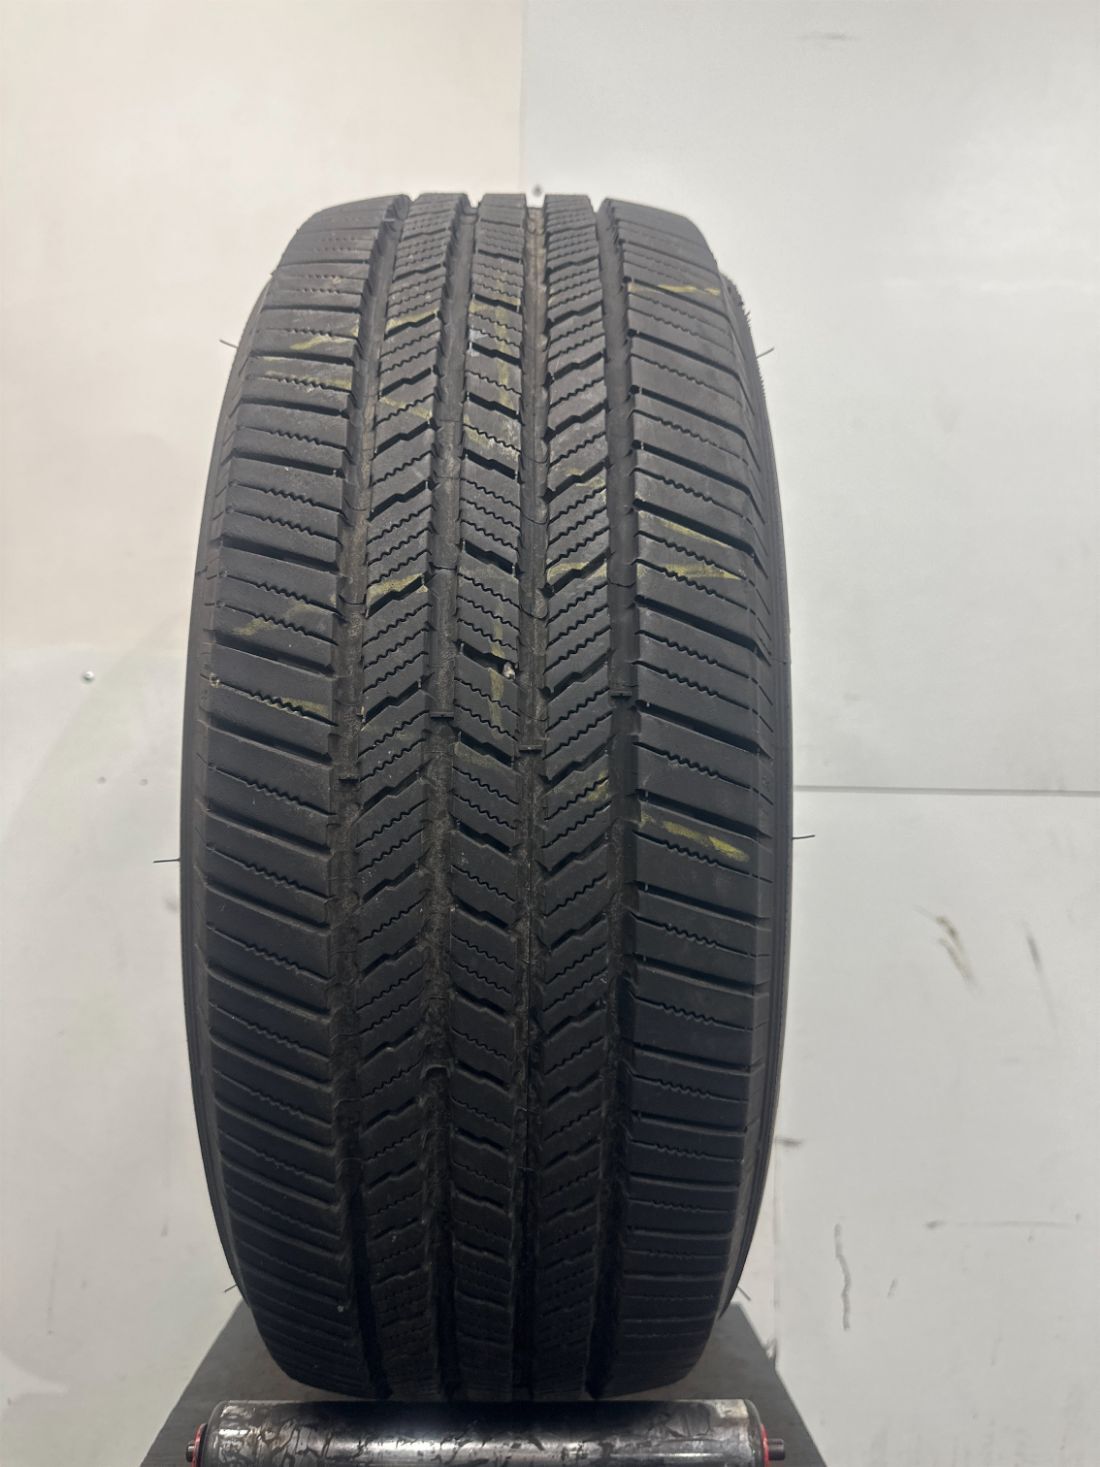 1 Michelin LTX M/S 2 Used  Tire P265/60R18 2656018 265/60/18 11/32